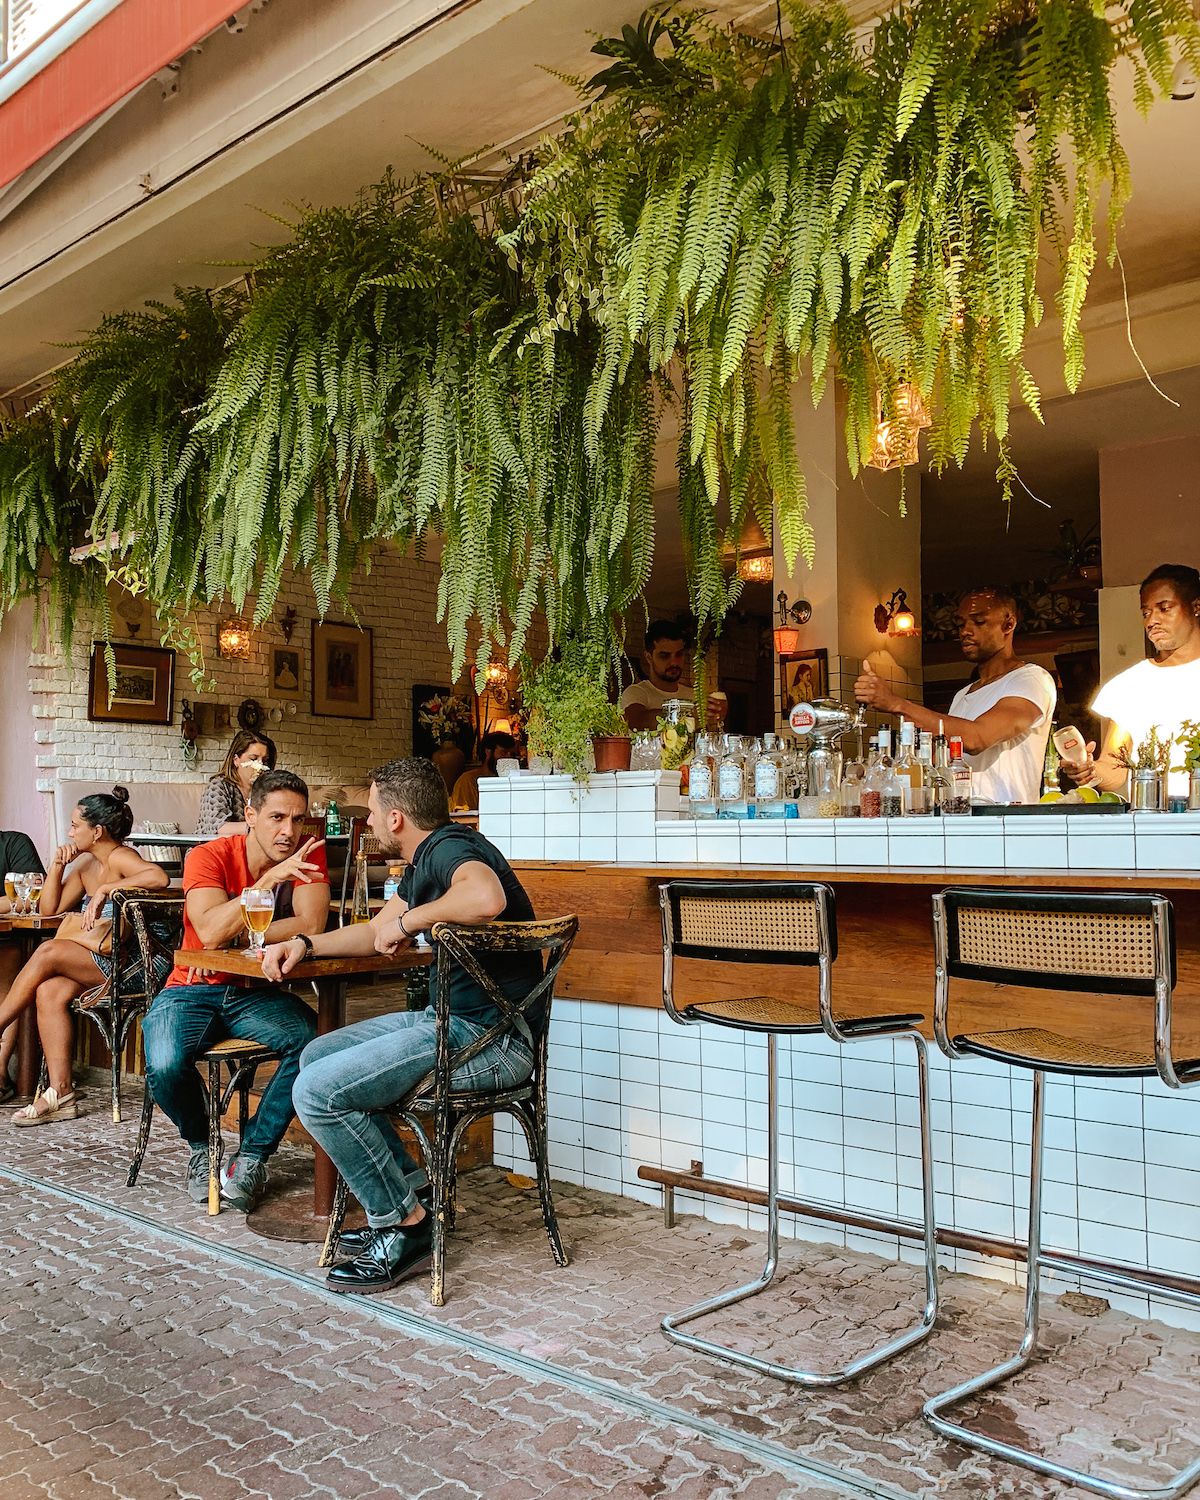 Le bar - Picture of Classico Beach Club Urca, Rio de Janeiro